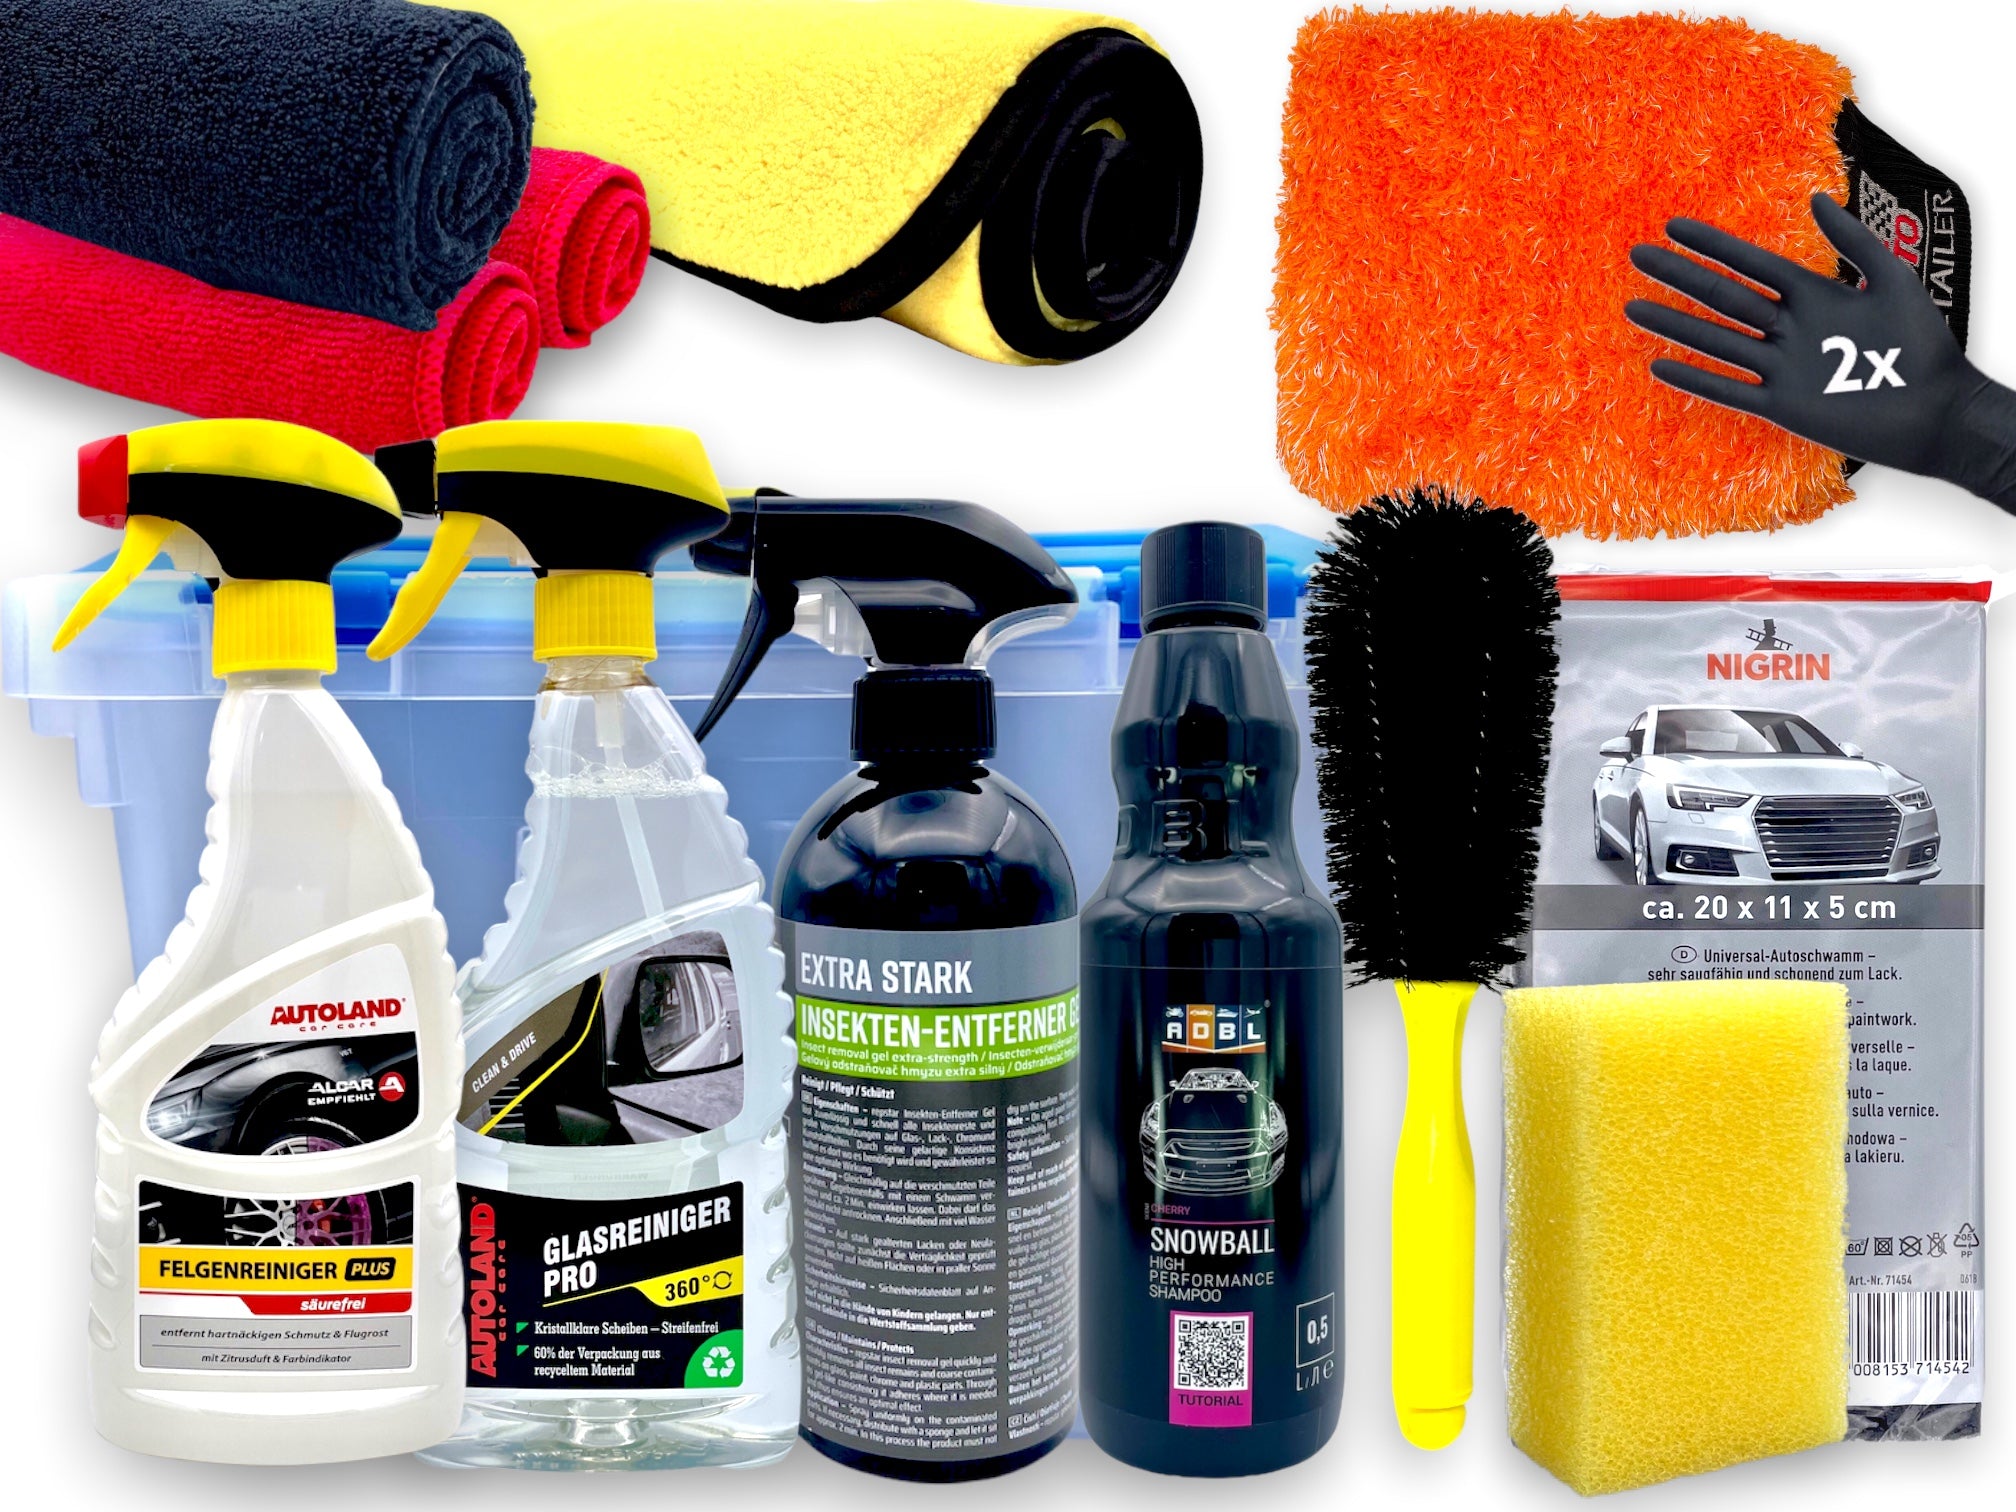 autopflege set auto reinigungsset putzset für pkw reinigung geschenkset geschenkidee für männer weihnachtsgeschenk 